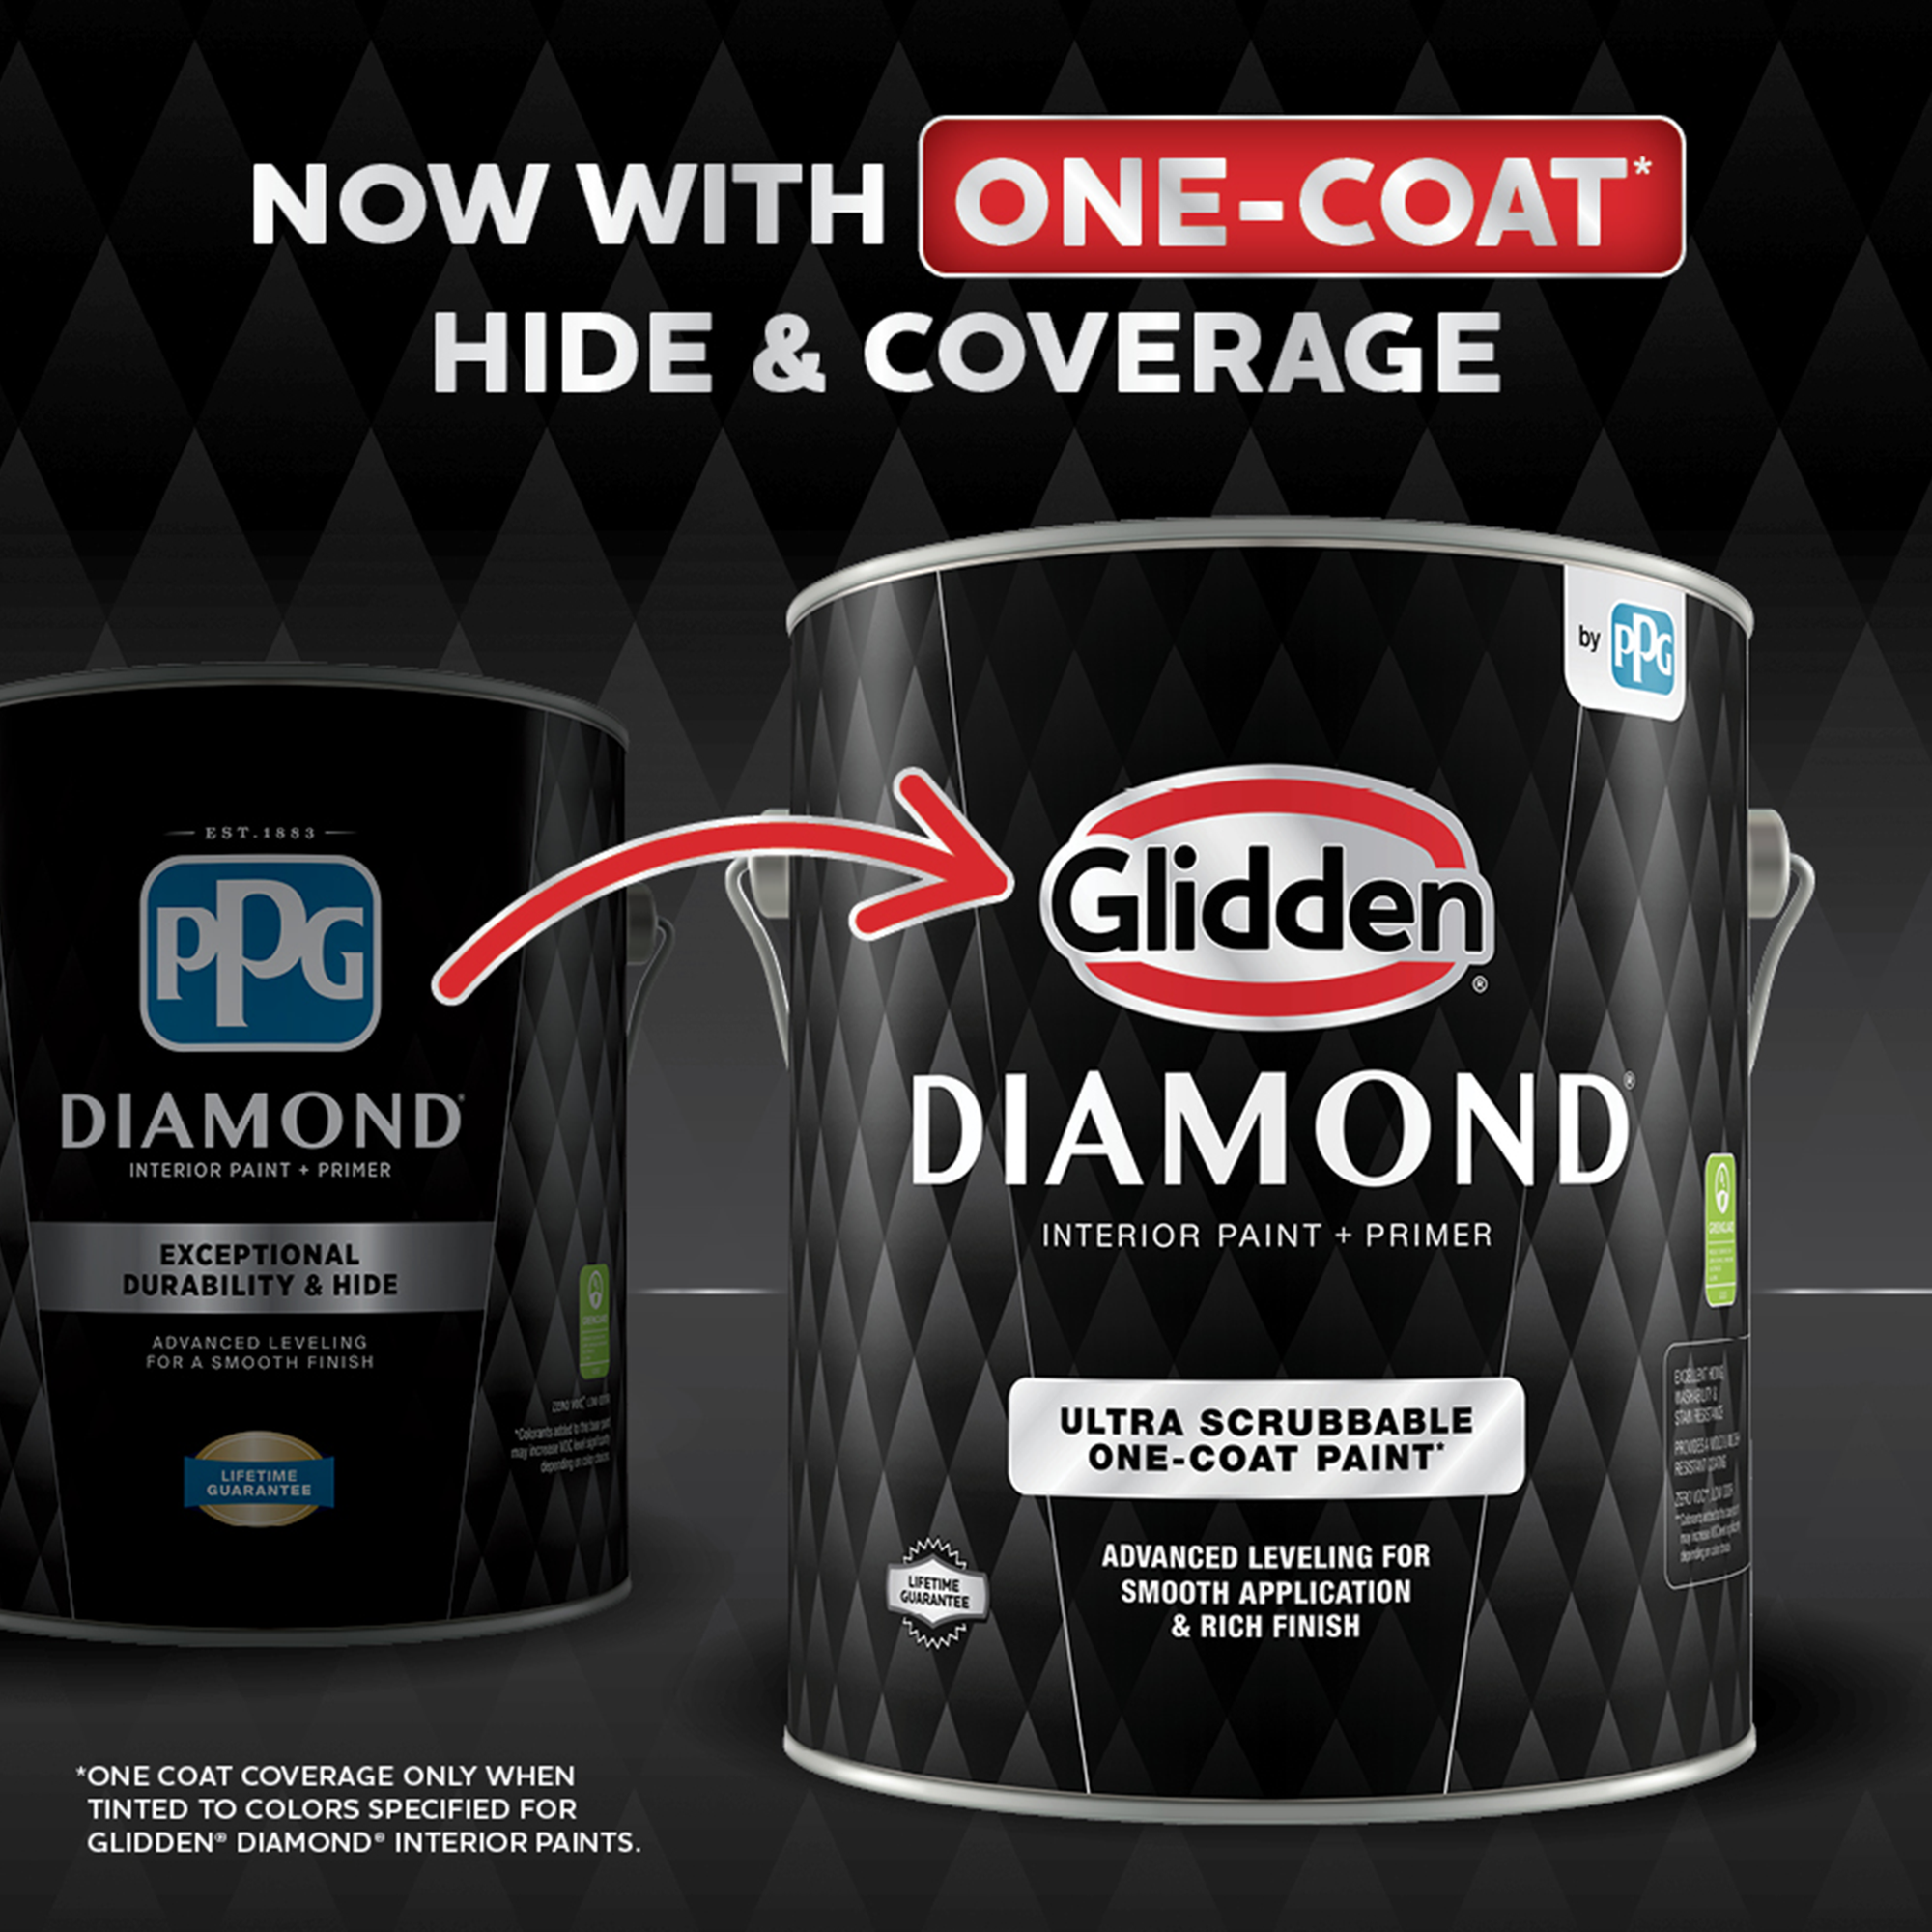 PPG Diamond is now Glidden Diamond